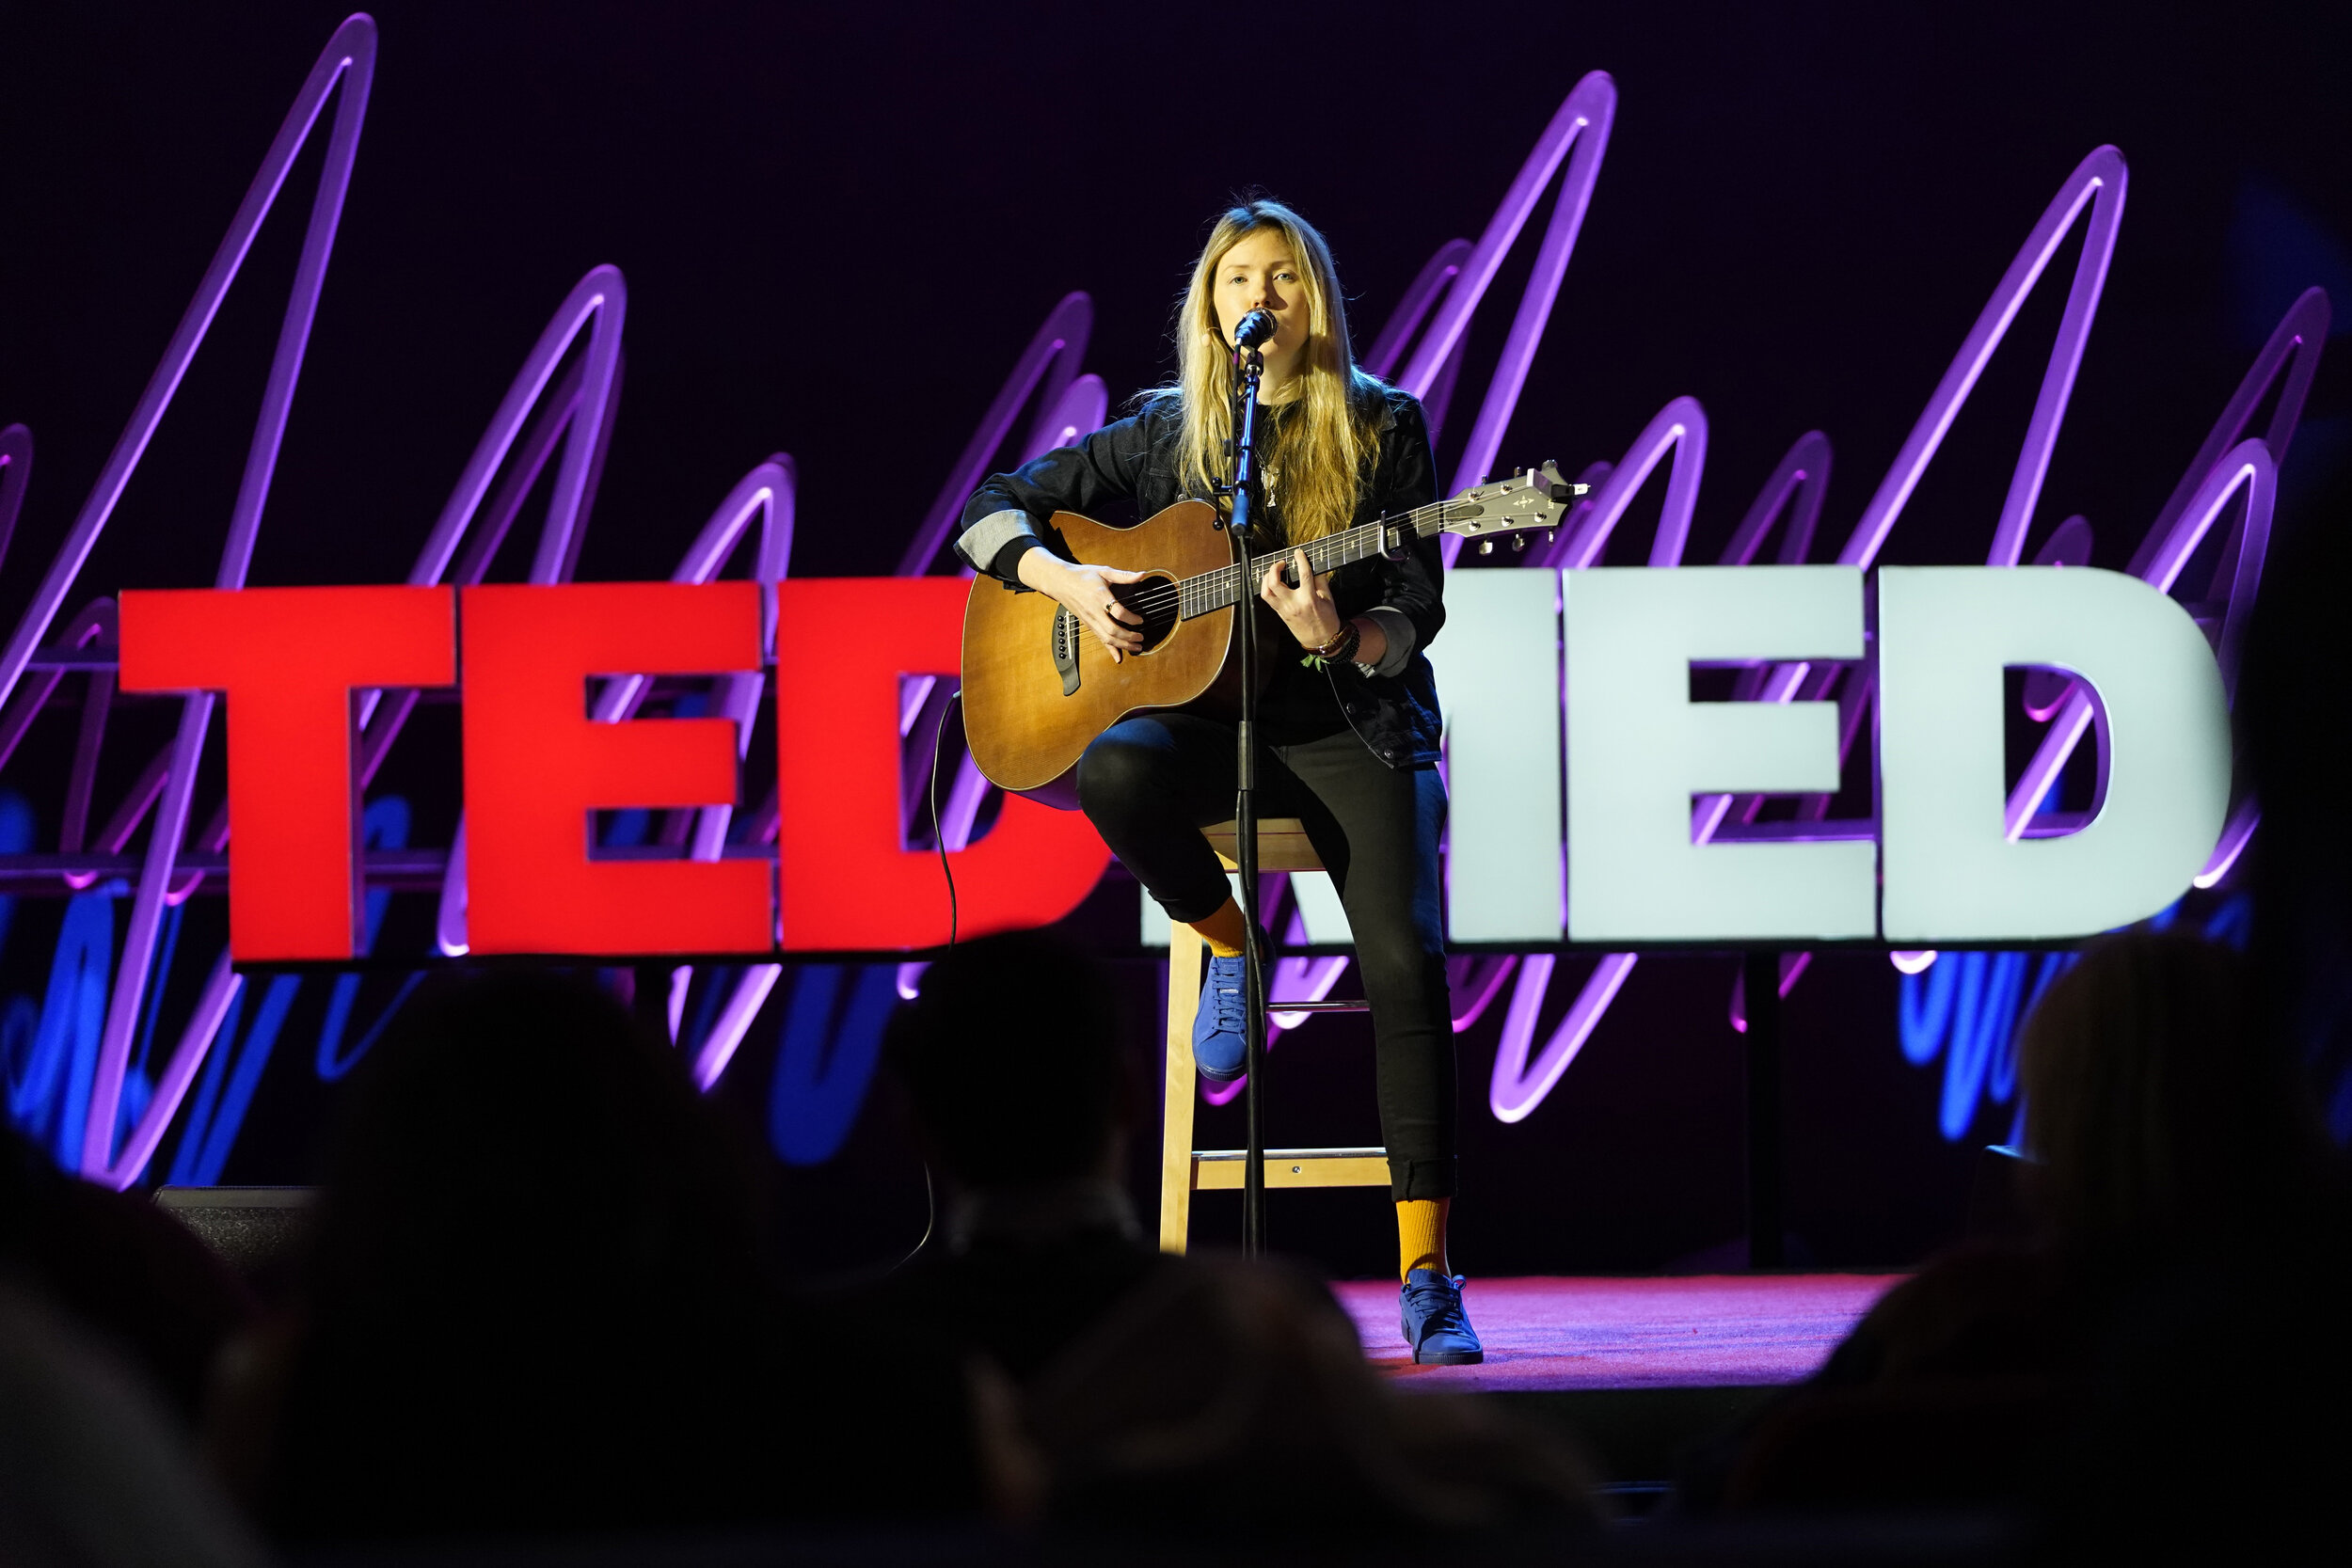  XX at TEDMED on March 3, 2020 in Boston, MA. (Photo by Ryan Lash/Ryan Lash/TEDMED) 